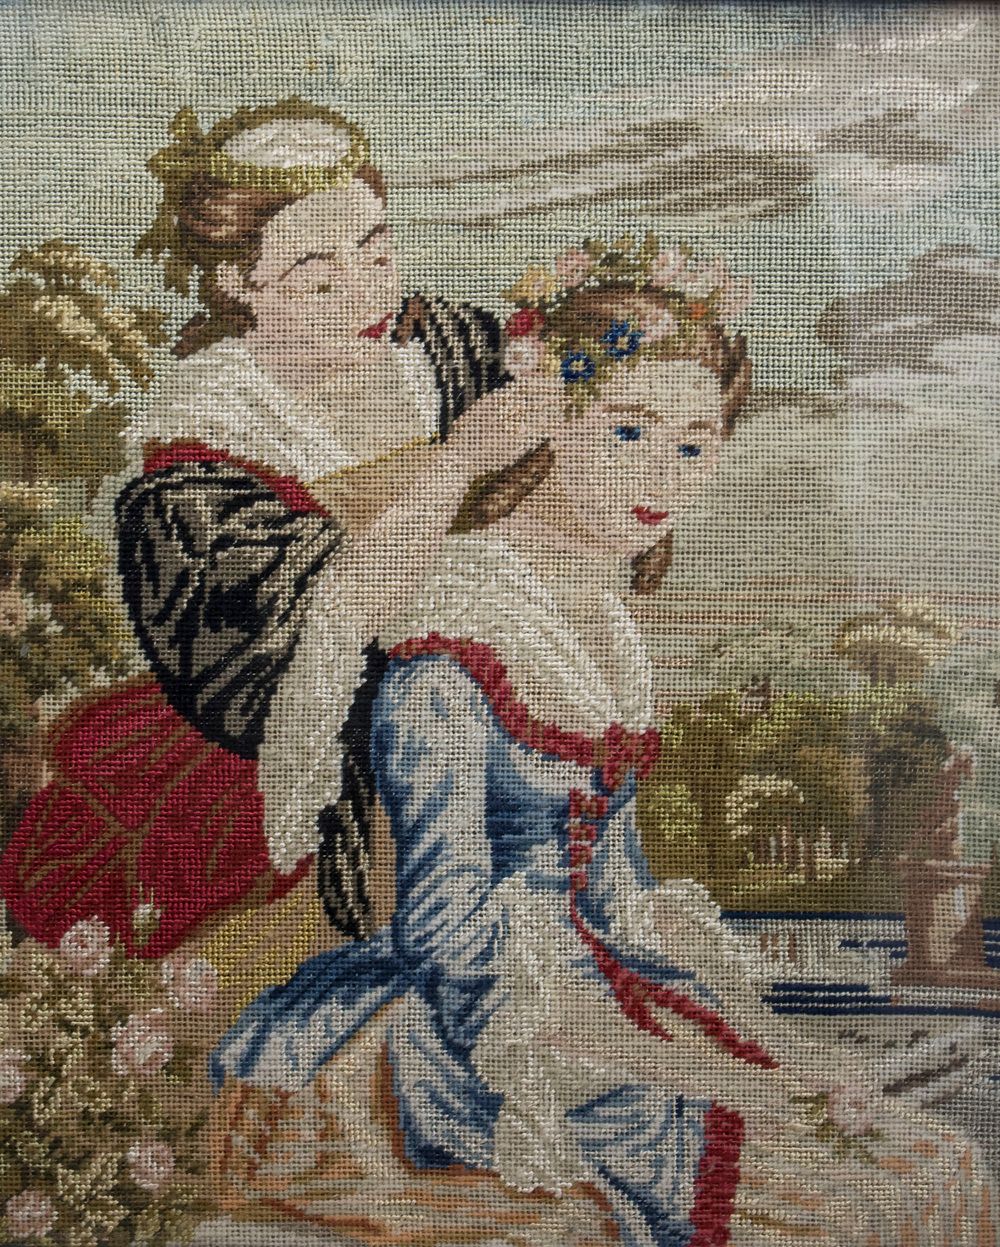 Stickbild 'Beim Flechten eines Blütenkranz' / Embroidery picture 'While broiding&hellip;